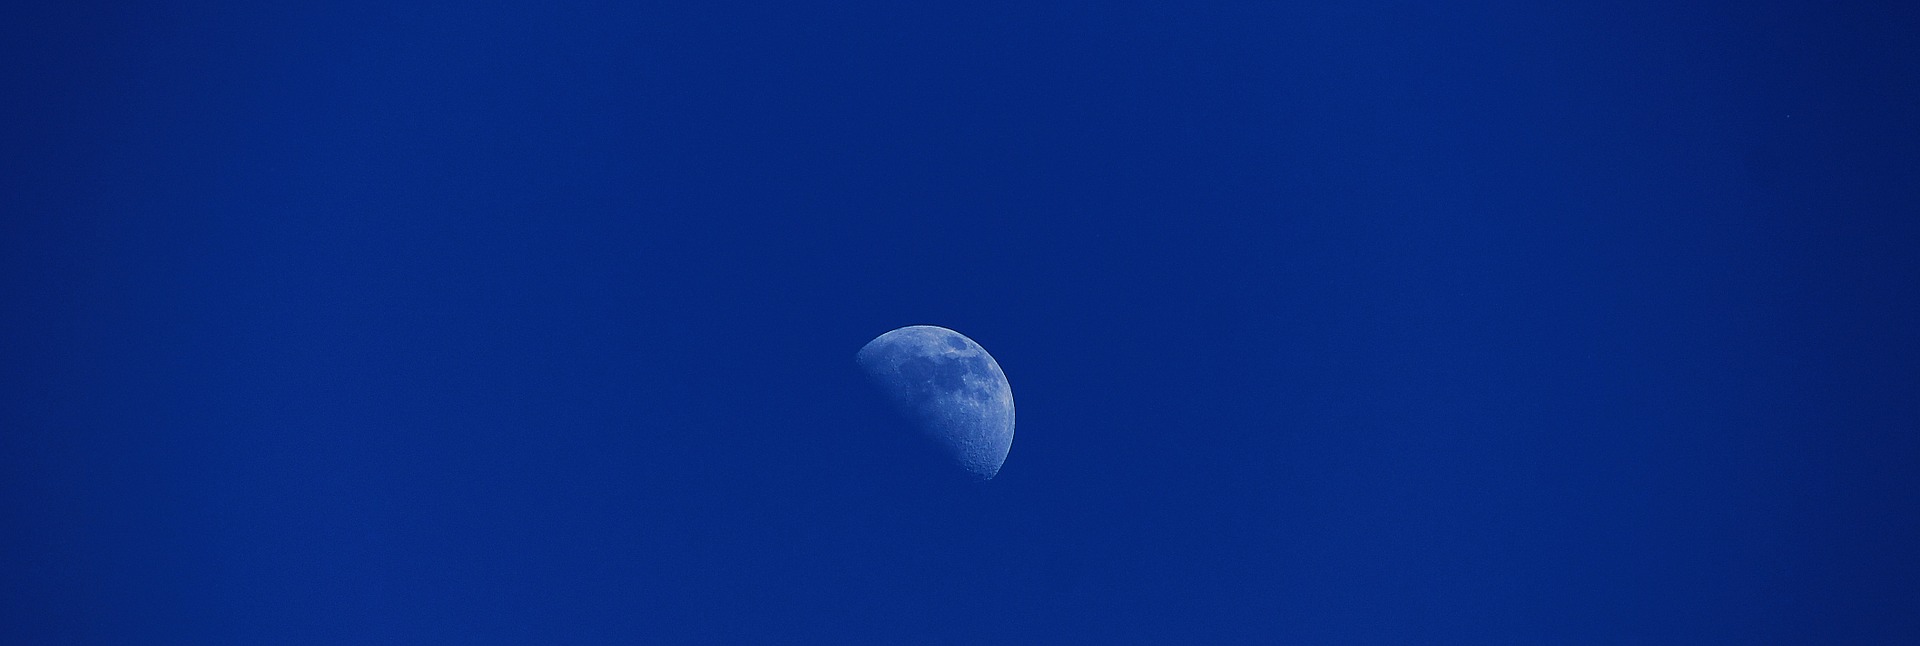 moon-769918_1920